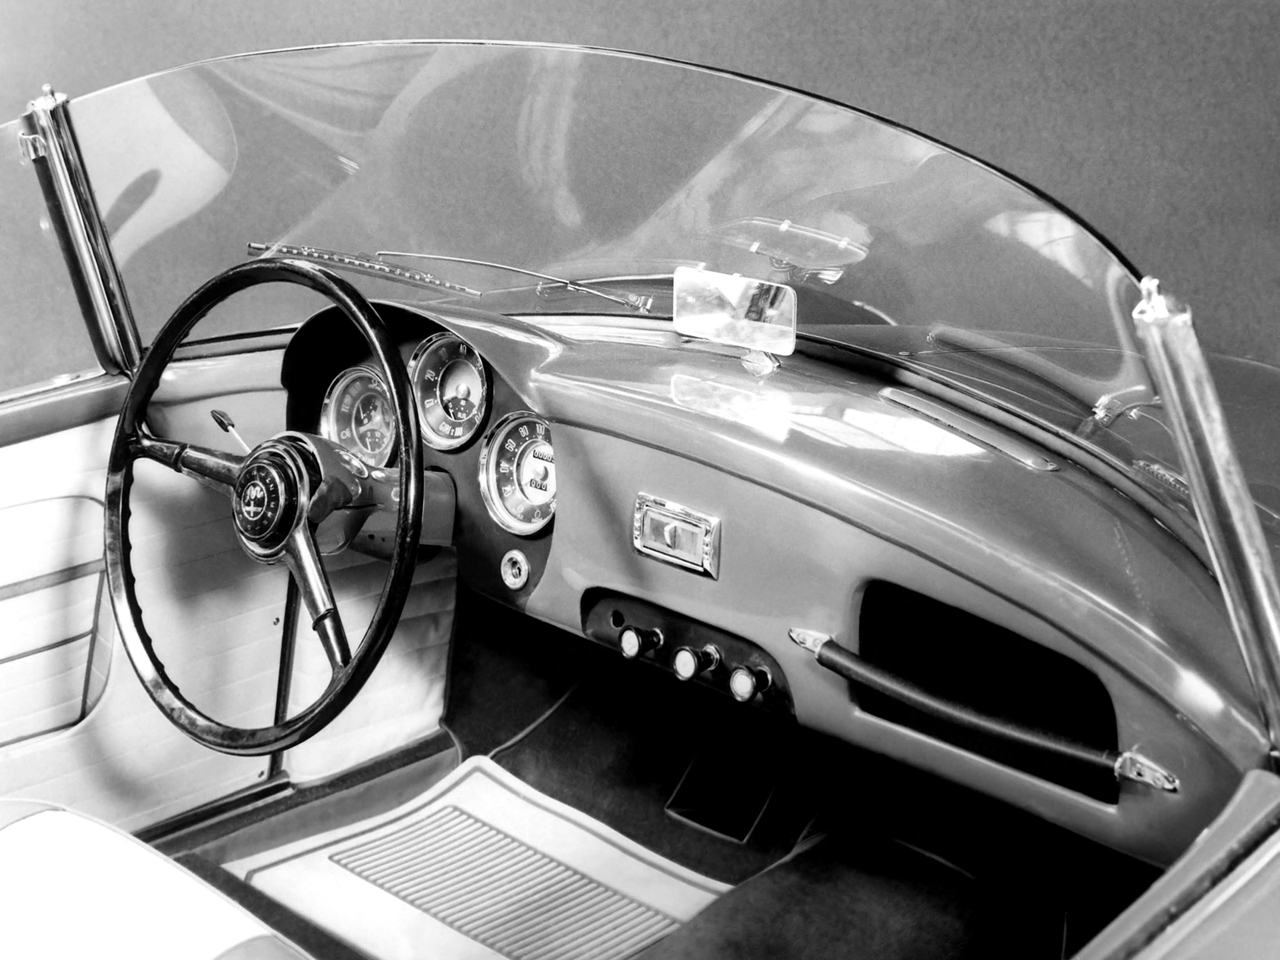 Alfa Romeo Giulietta Spider Prototipo (Bertone), 1956 - 1st Prototype (Chassis #002) - Interior